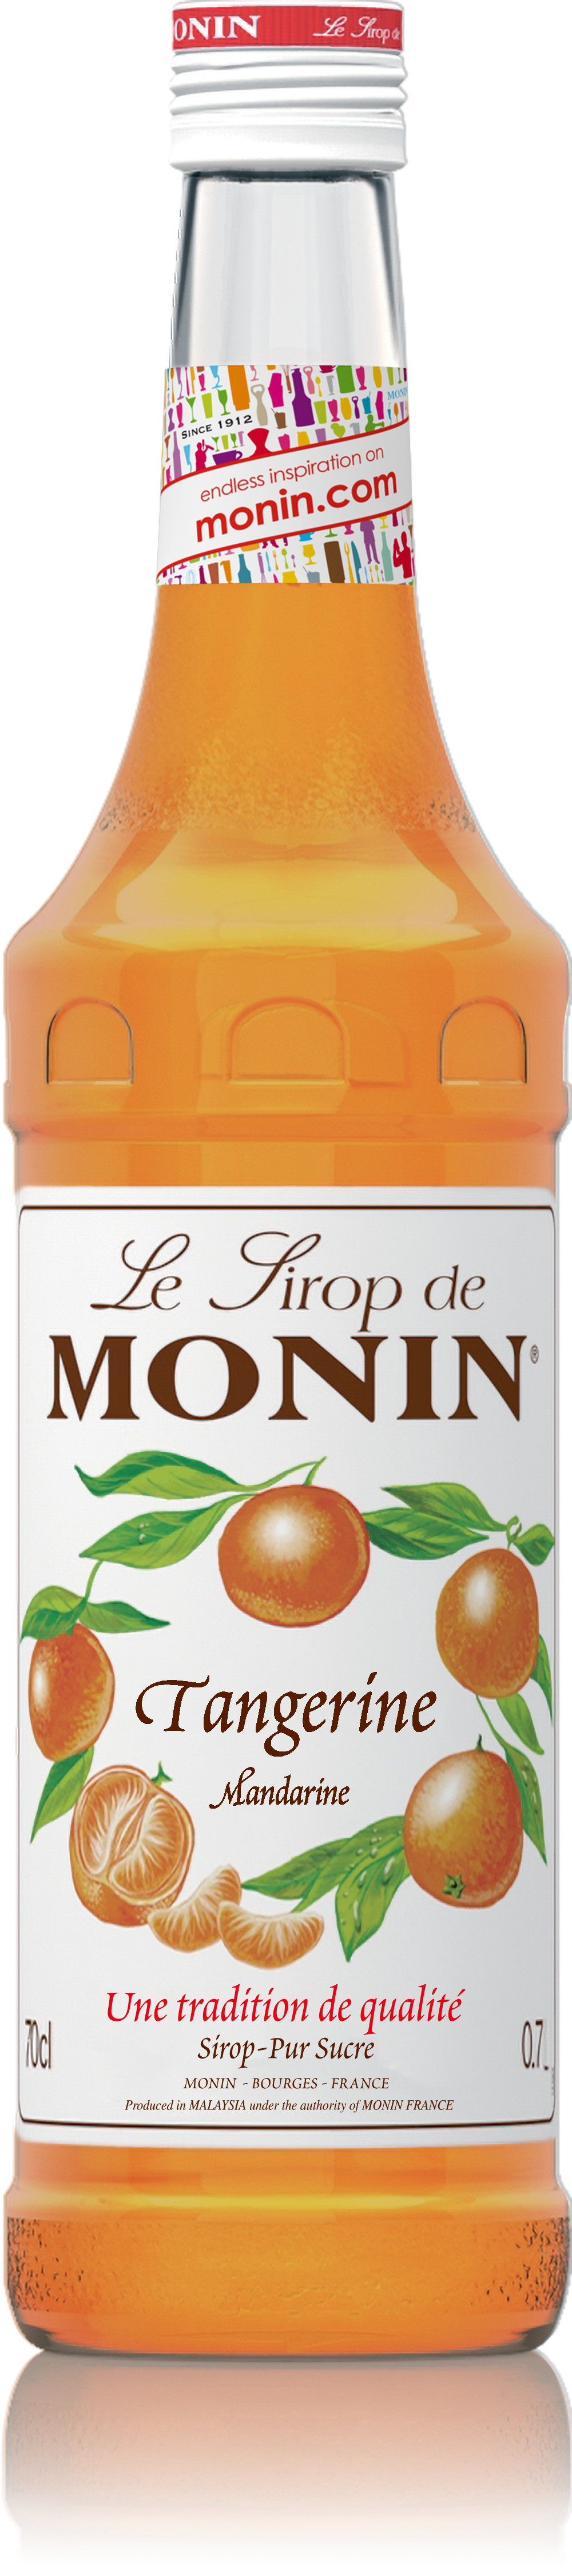 Le Sirop de MONIN Tangerine